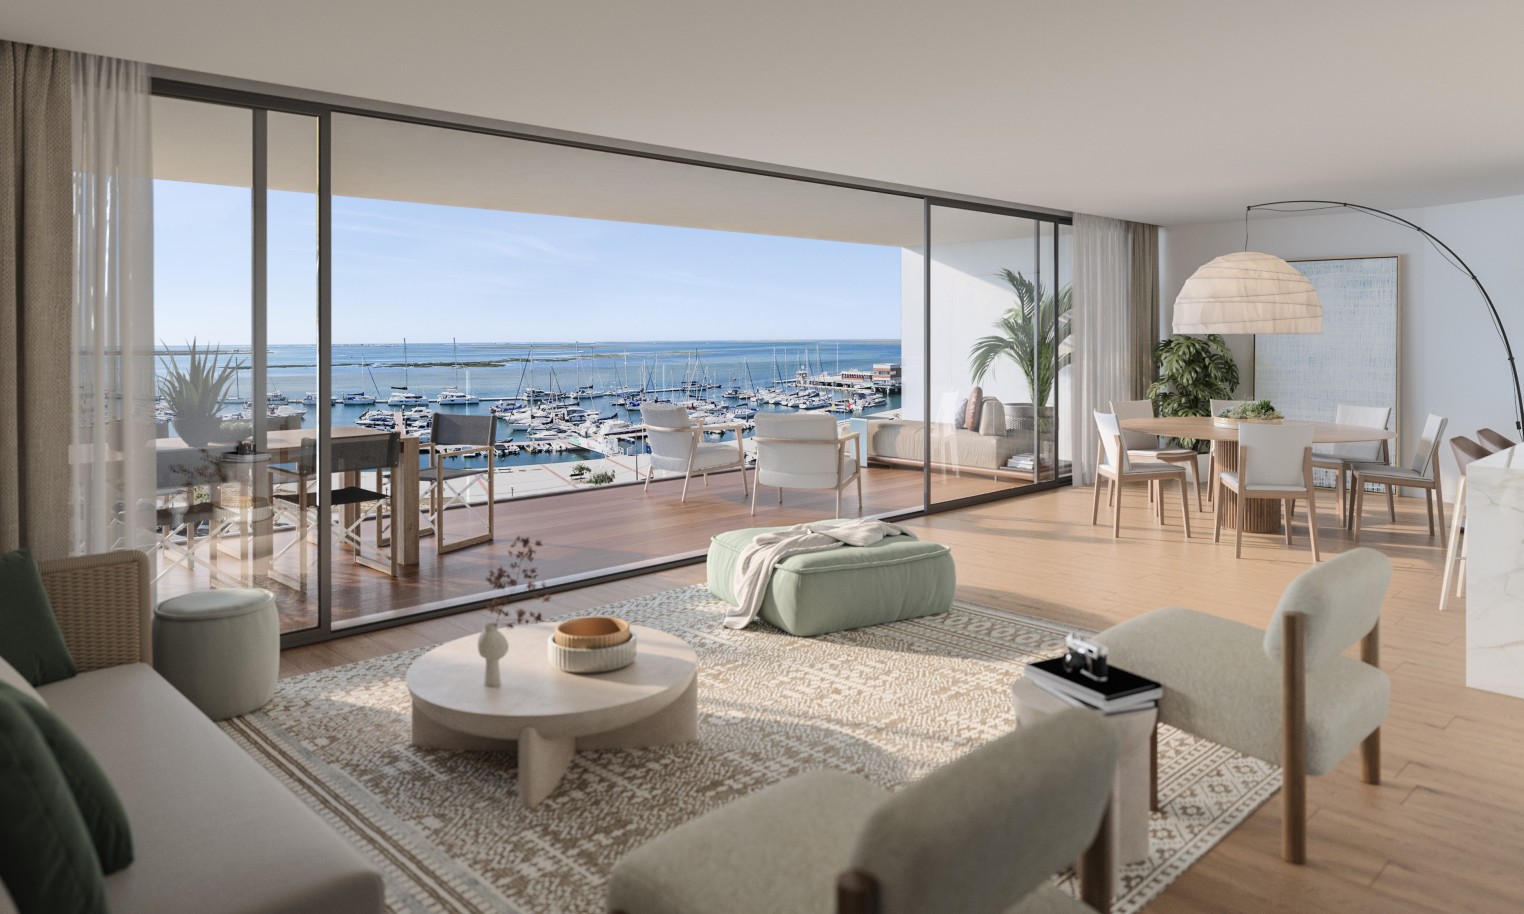 Appartements neufs avec vue sur mer, 1, 2 & 3 chambres, à vendre à Olhão, Algarve_244115